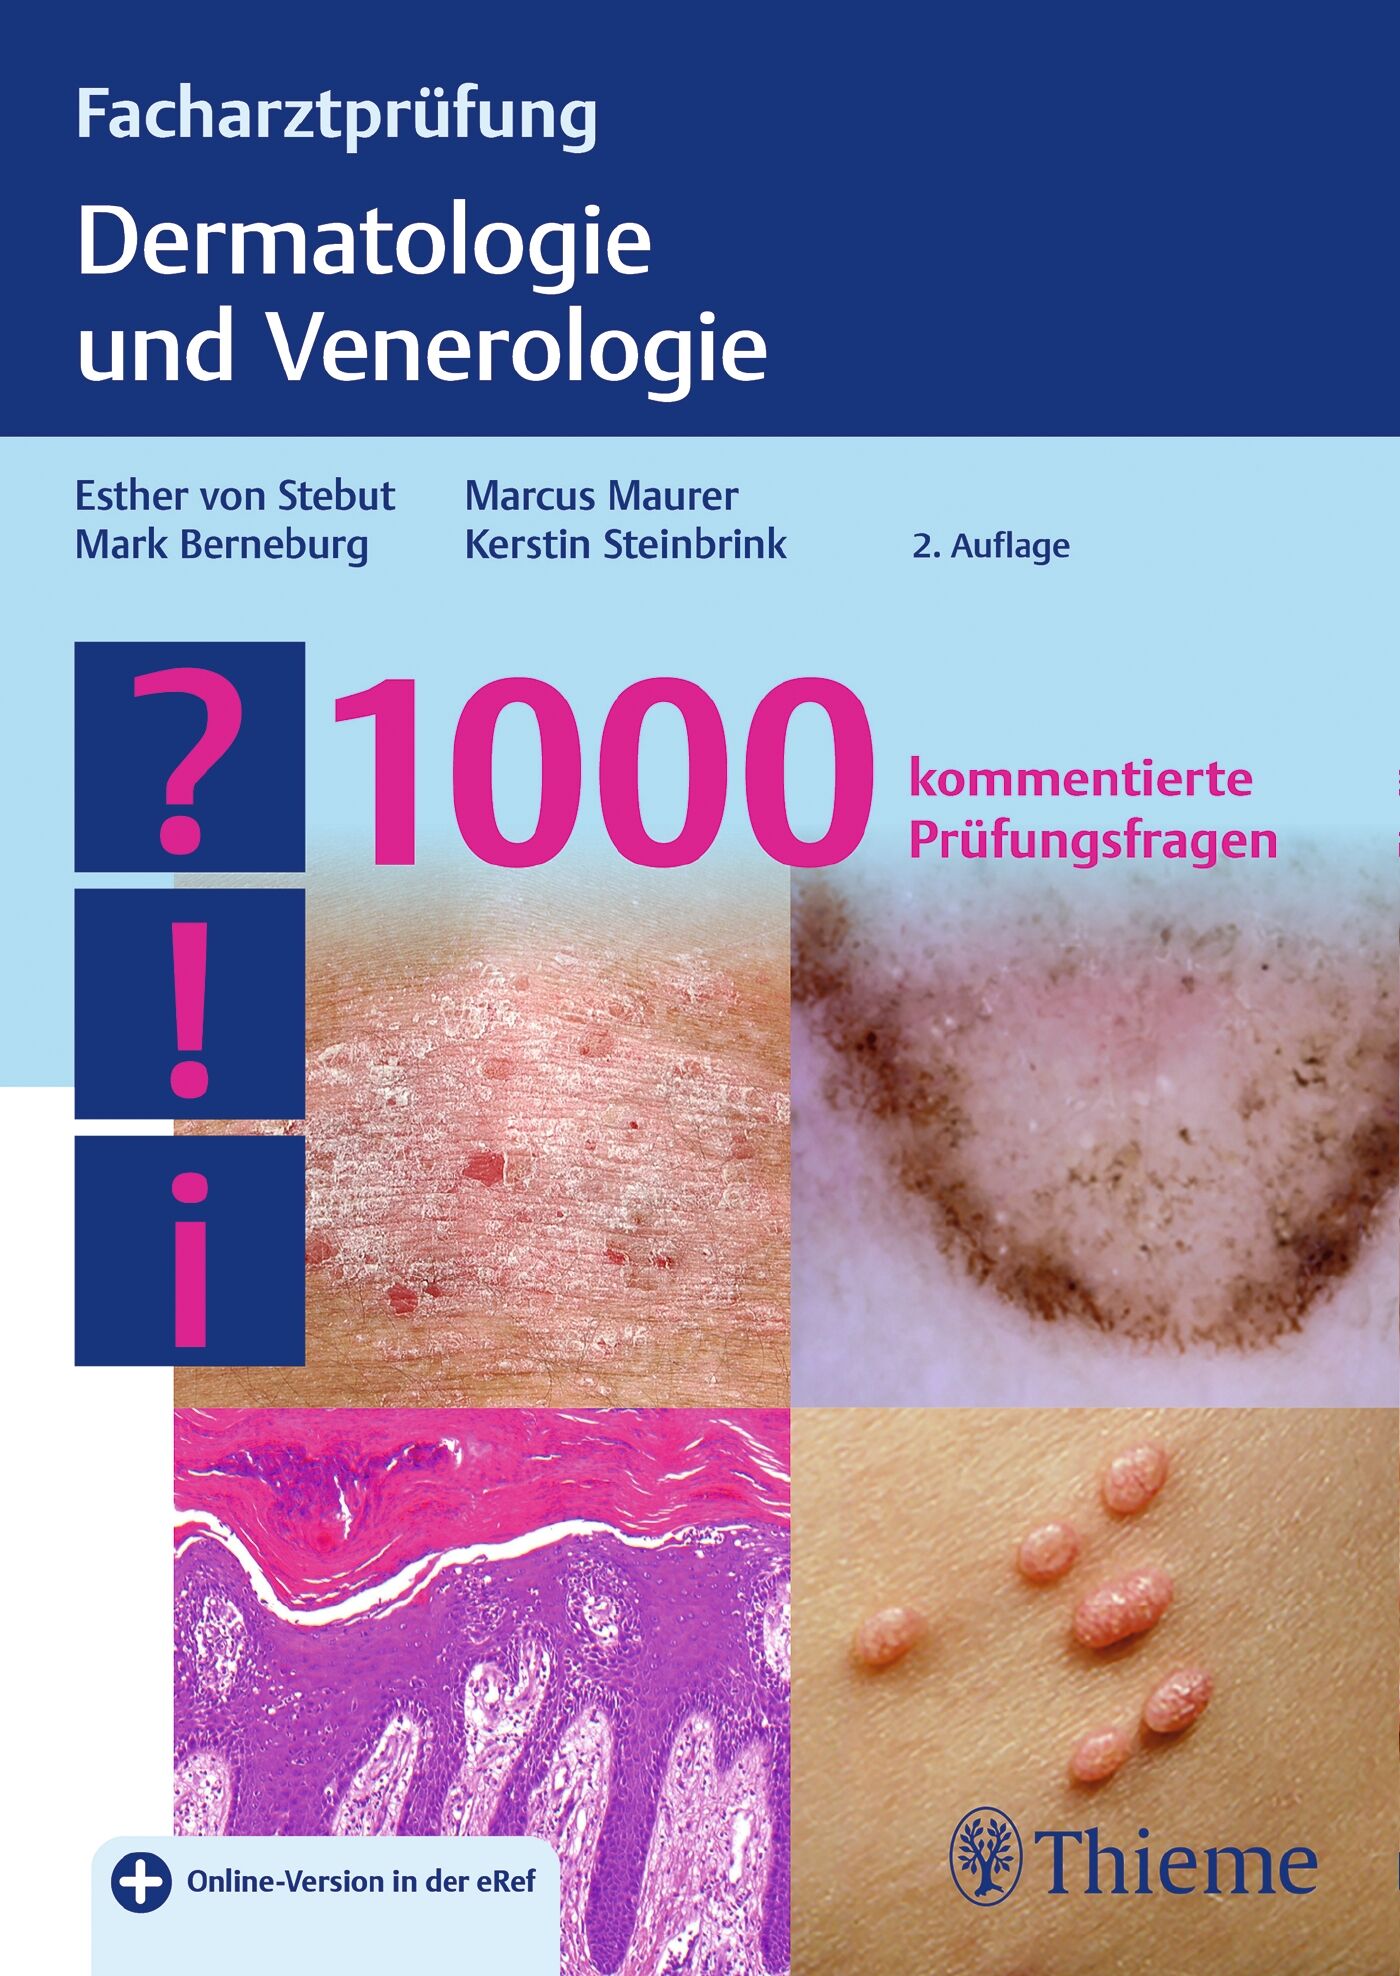 Facharztprüfung Dermatologie und Venerologie, 9783132428188